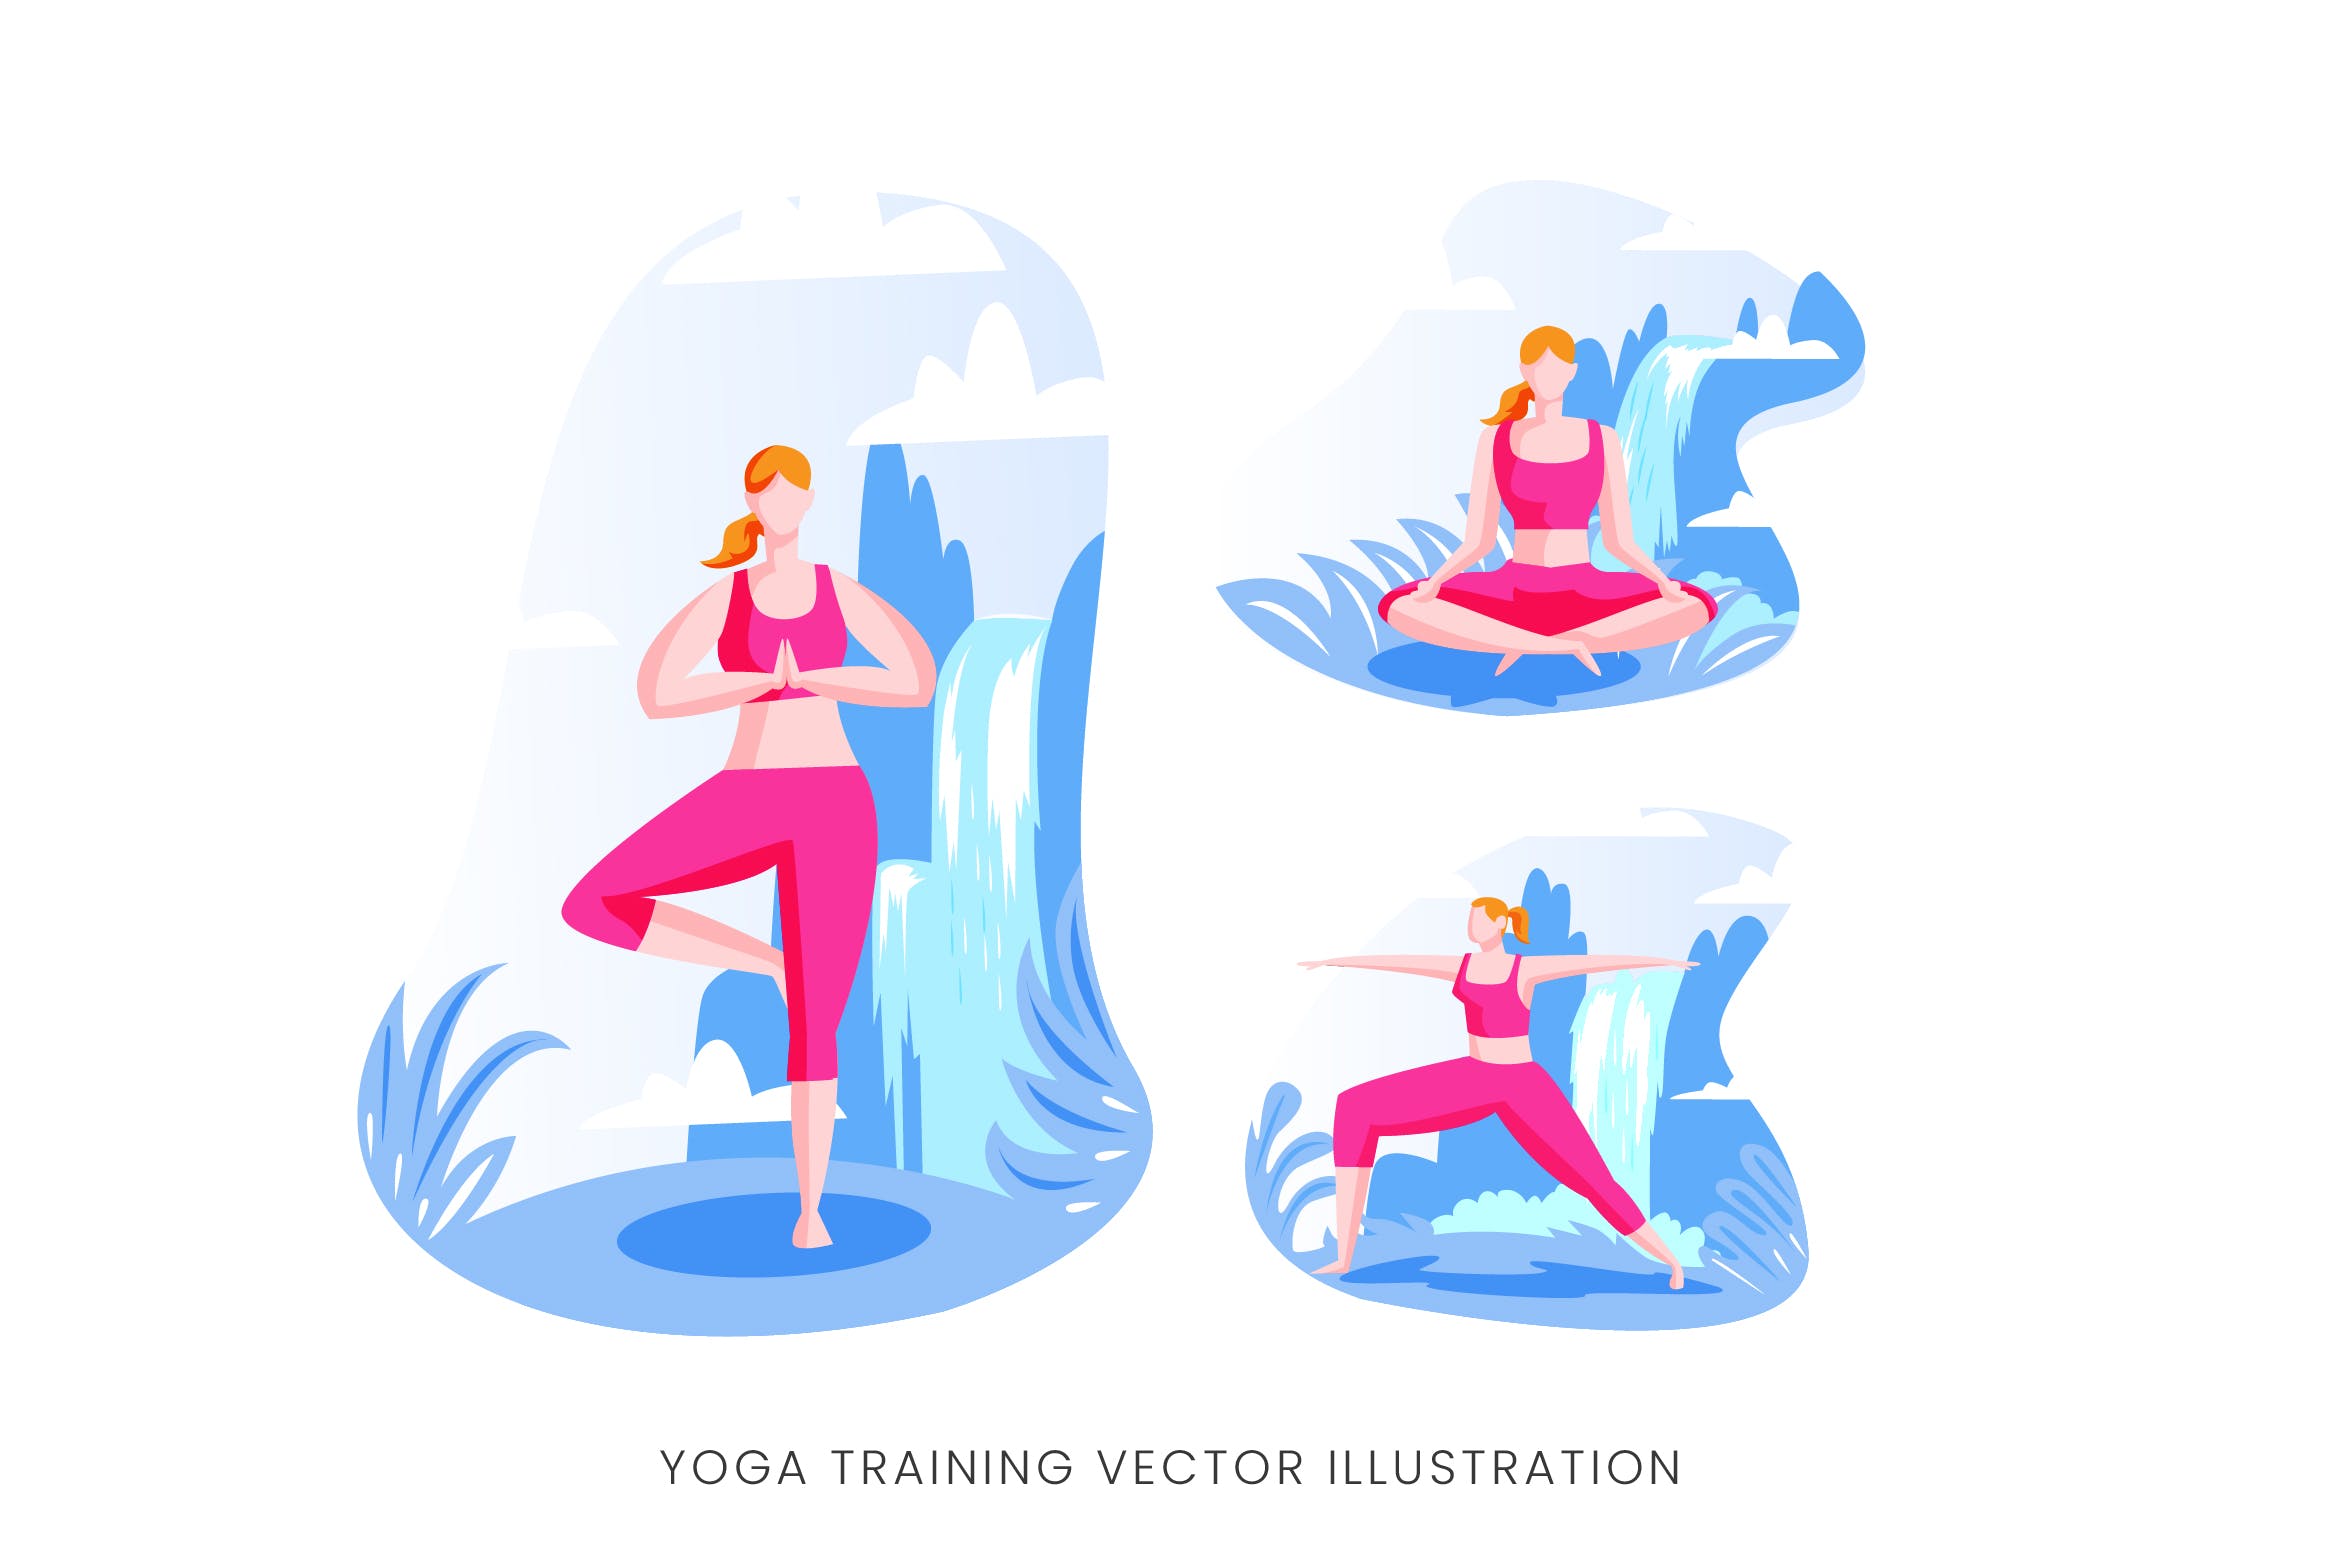 瑜伽训练人物形象矢量手绘蚂蚁素材精选设计素材 Yoga Training Vector Character Set插图